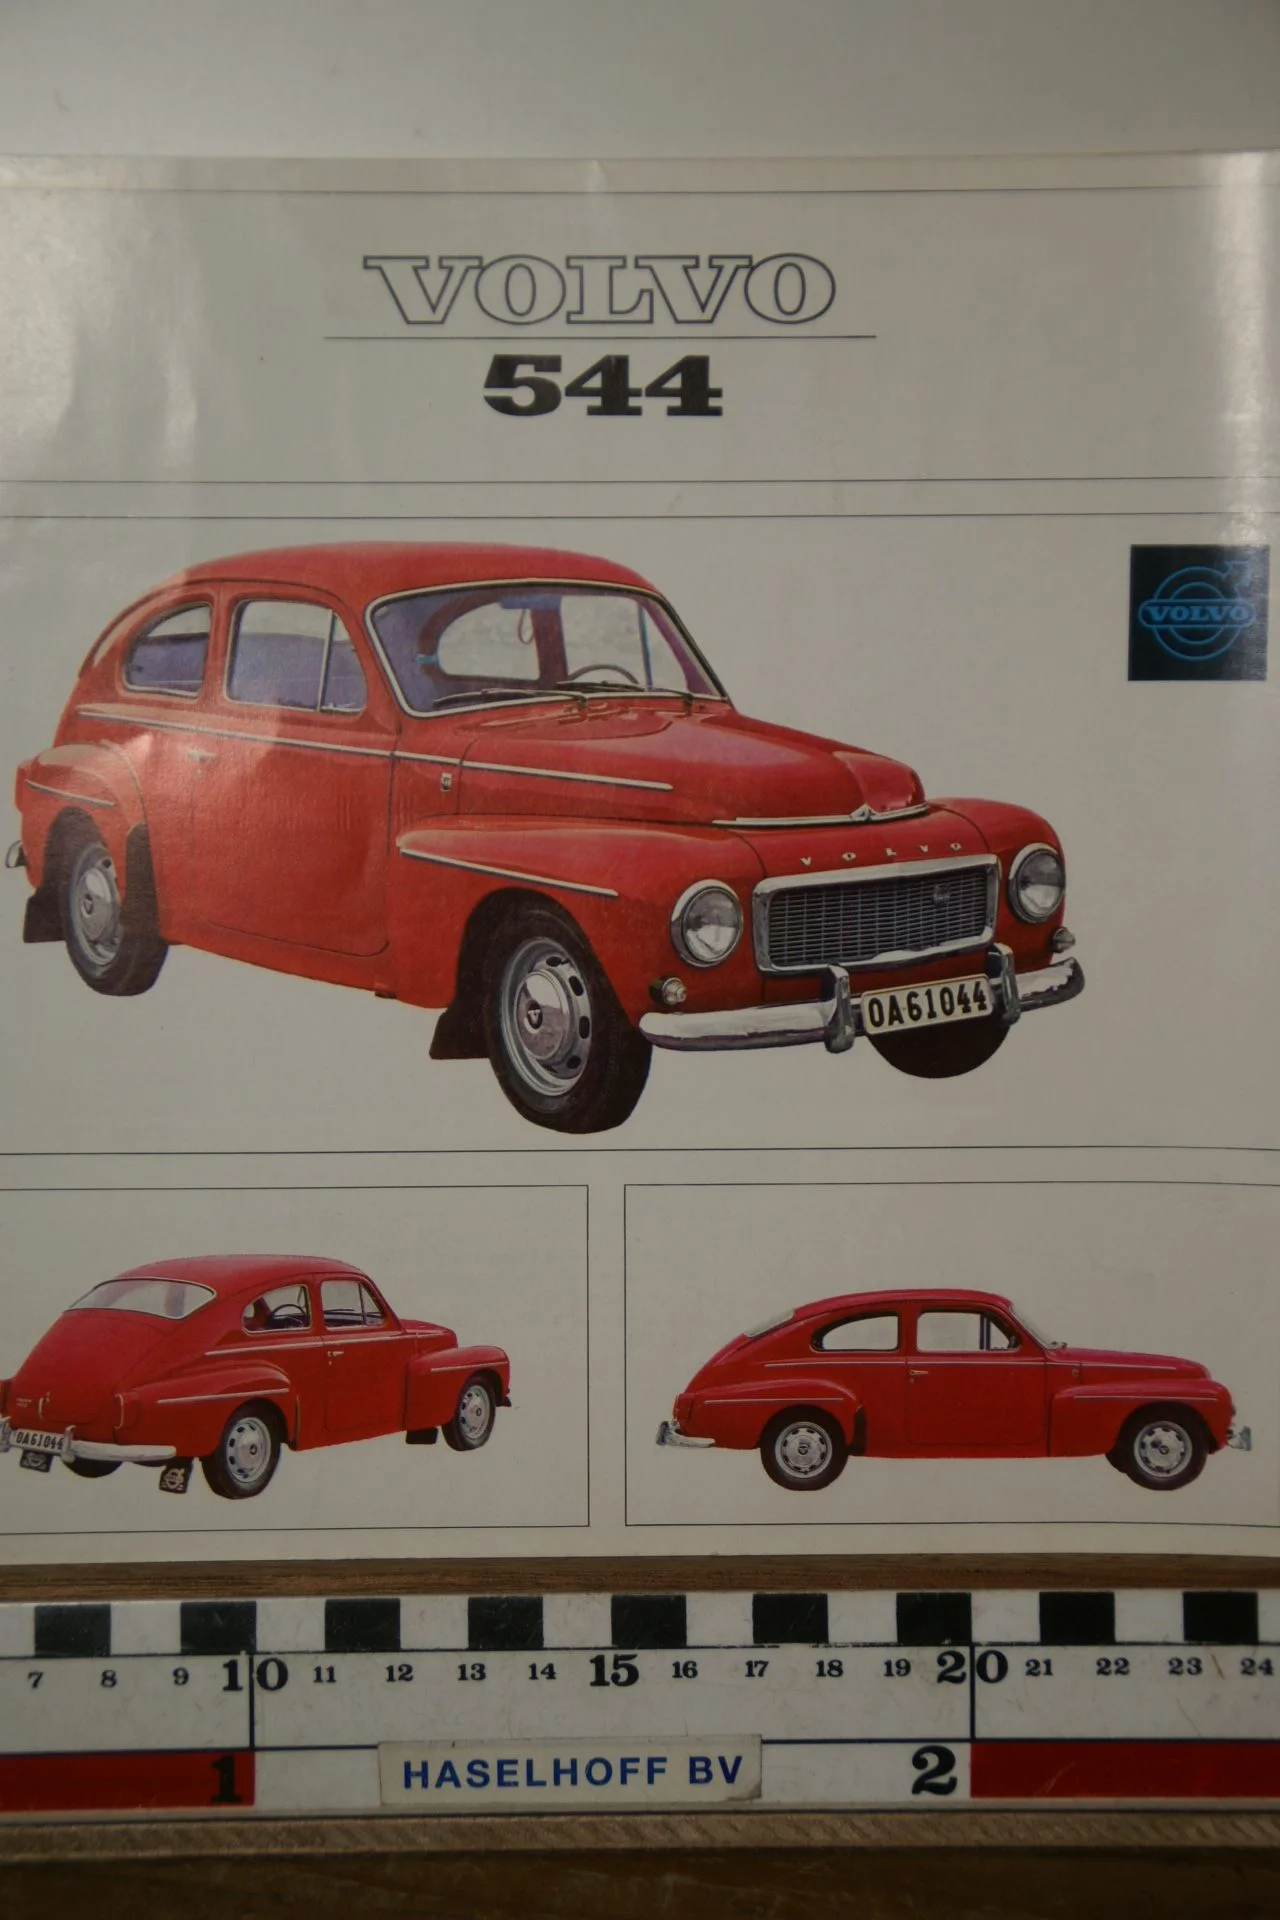 DSC04110 1964 brochure dubbelsheet Volvo PV544 Nederlands RK1555 2 rotated